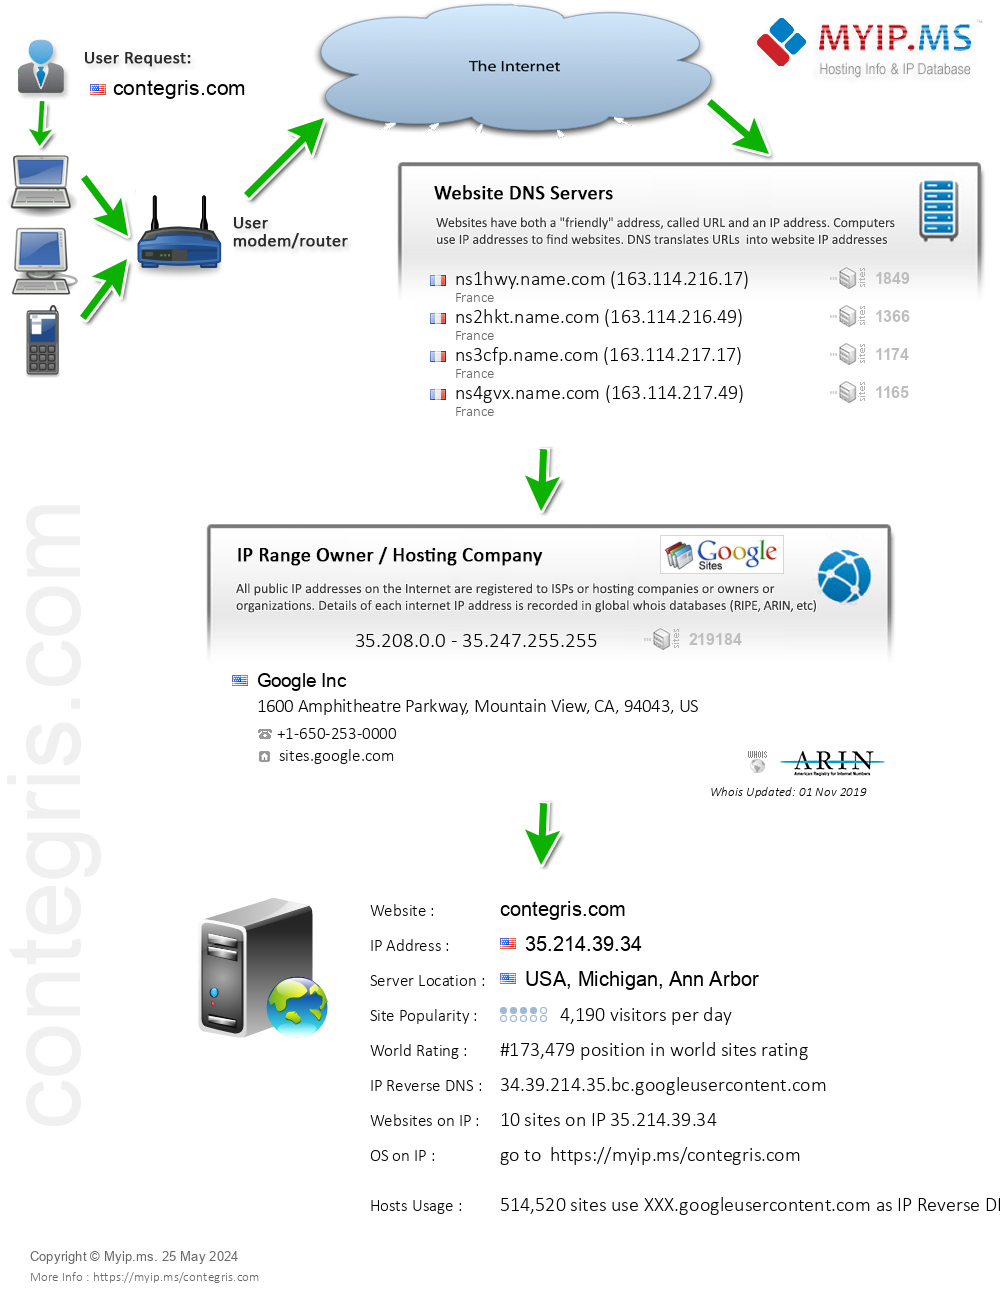 Contegris.com - Website Hosting Visual IP Diagram